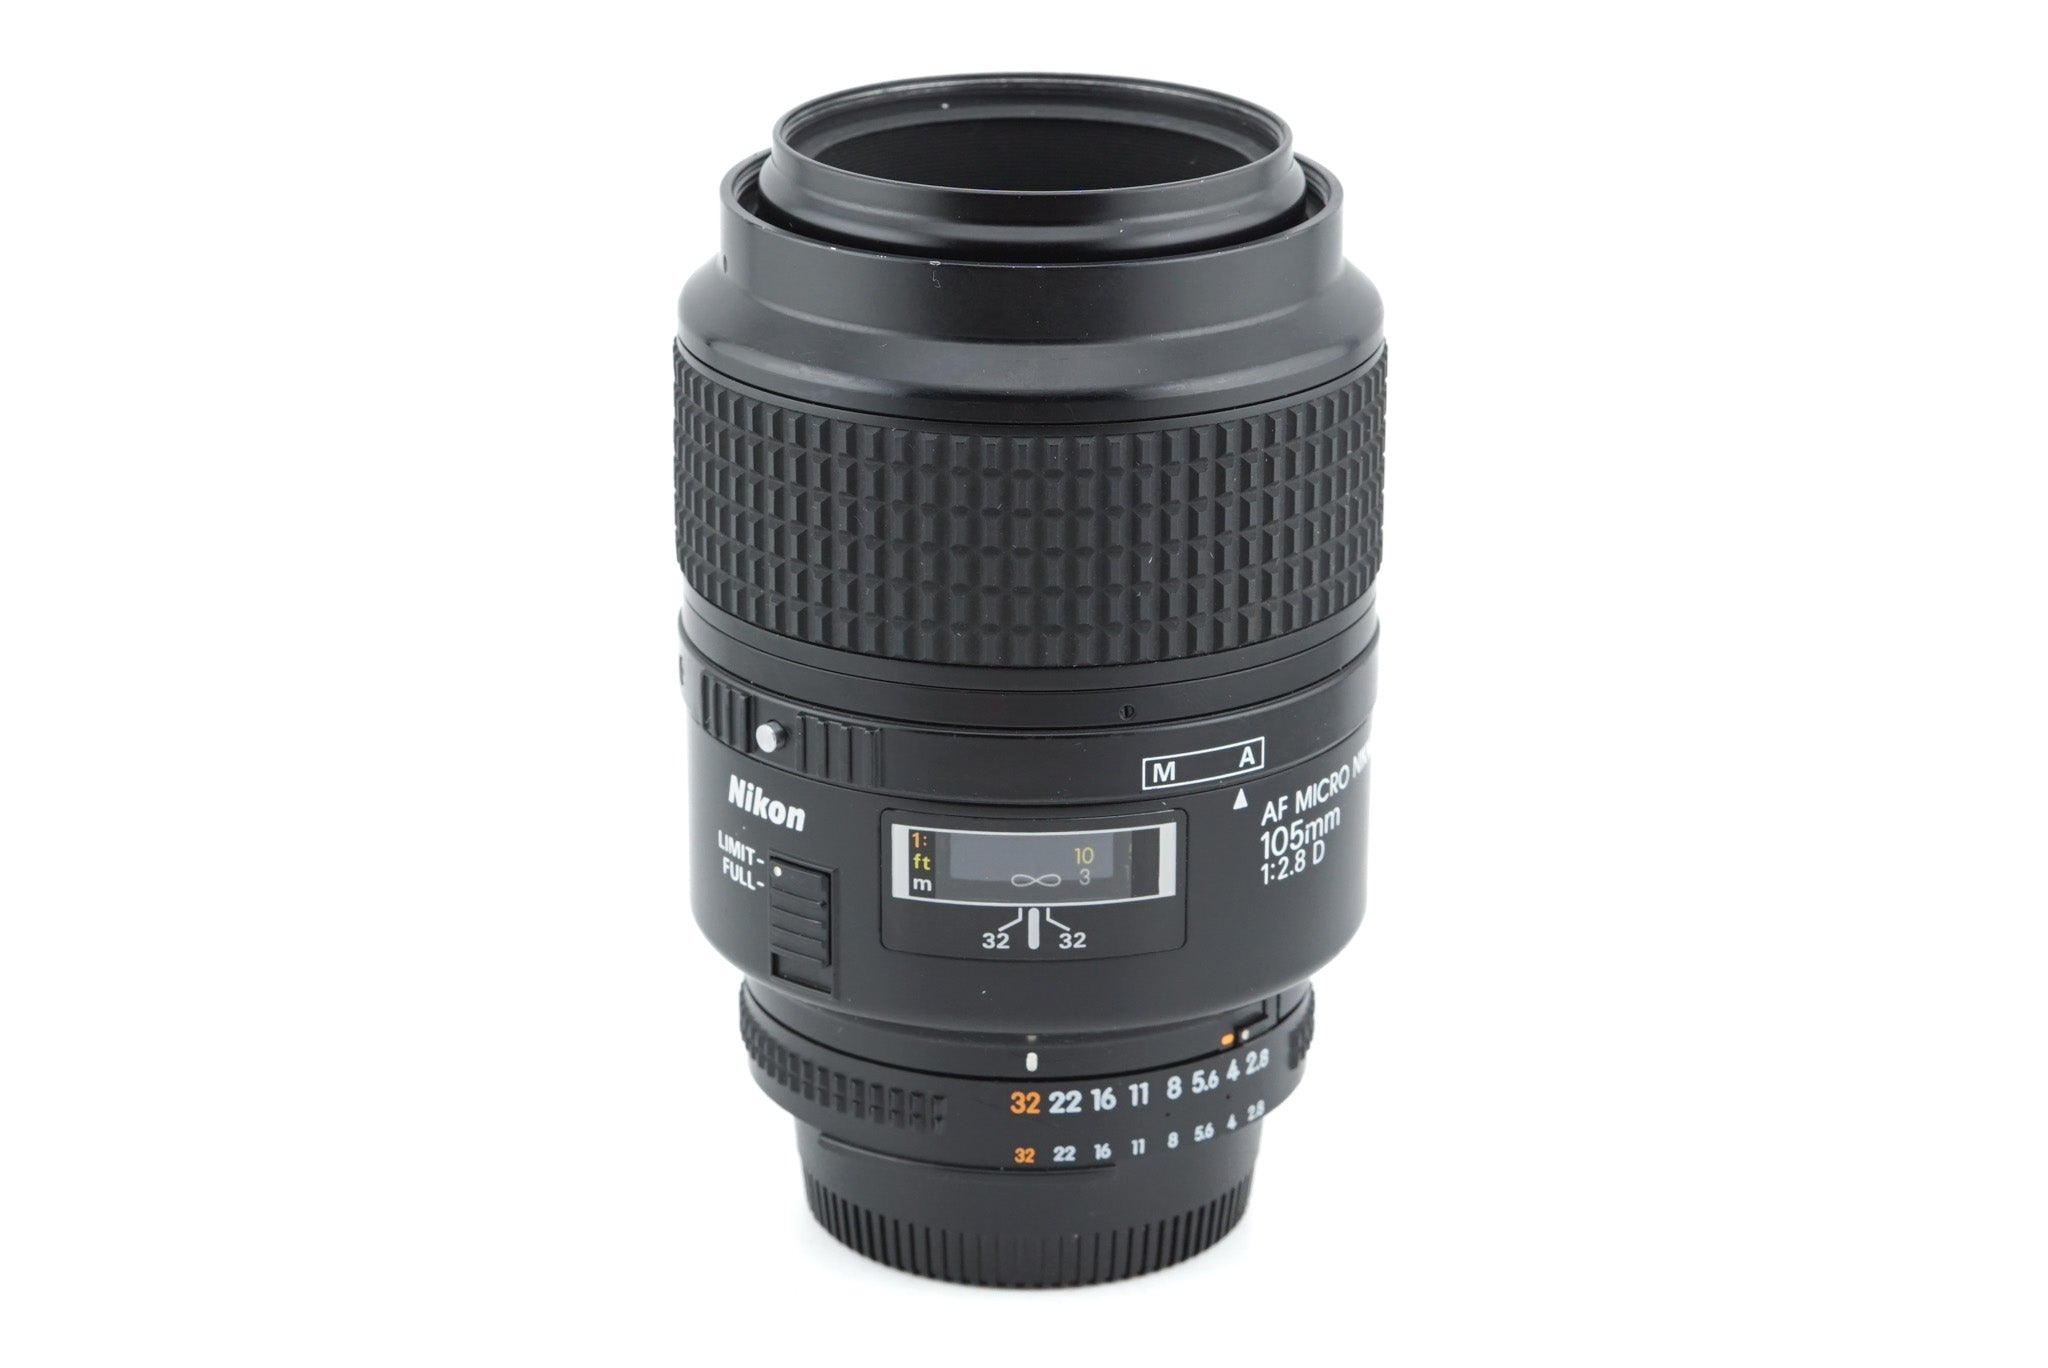 Nikon 105mm f2.8 D AF Micro Nikkor - Lens – Kamerastore